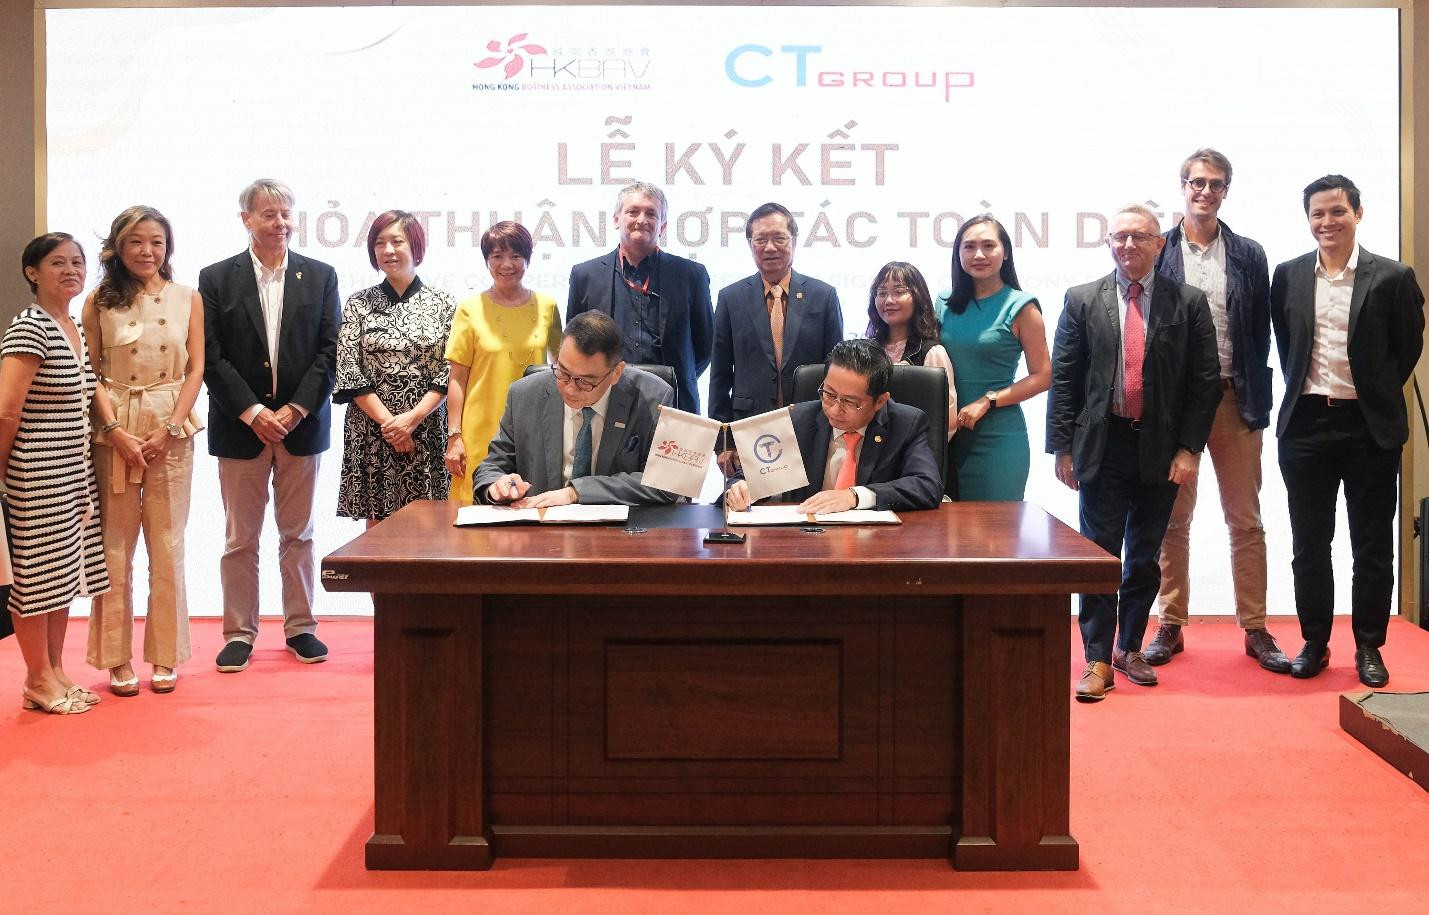 Hiệp Hội Doanh nghiệp Hồng Kông Việt Nam sẽ đồng hành với CT Group mở rộng cơ hội đầu tư quốc tế.